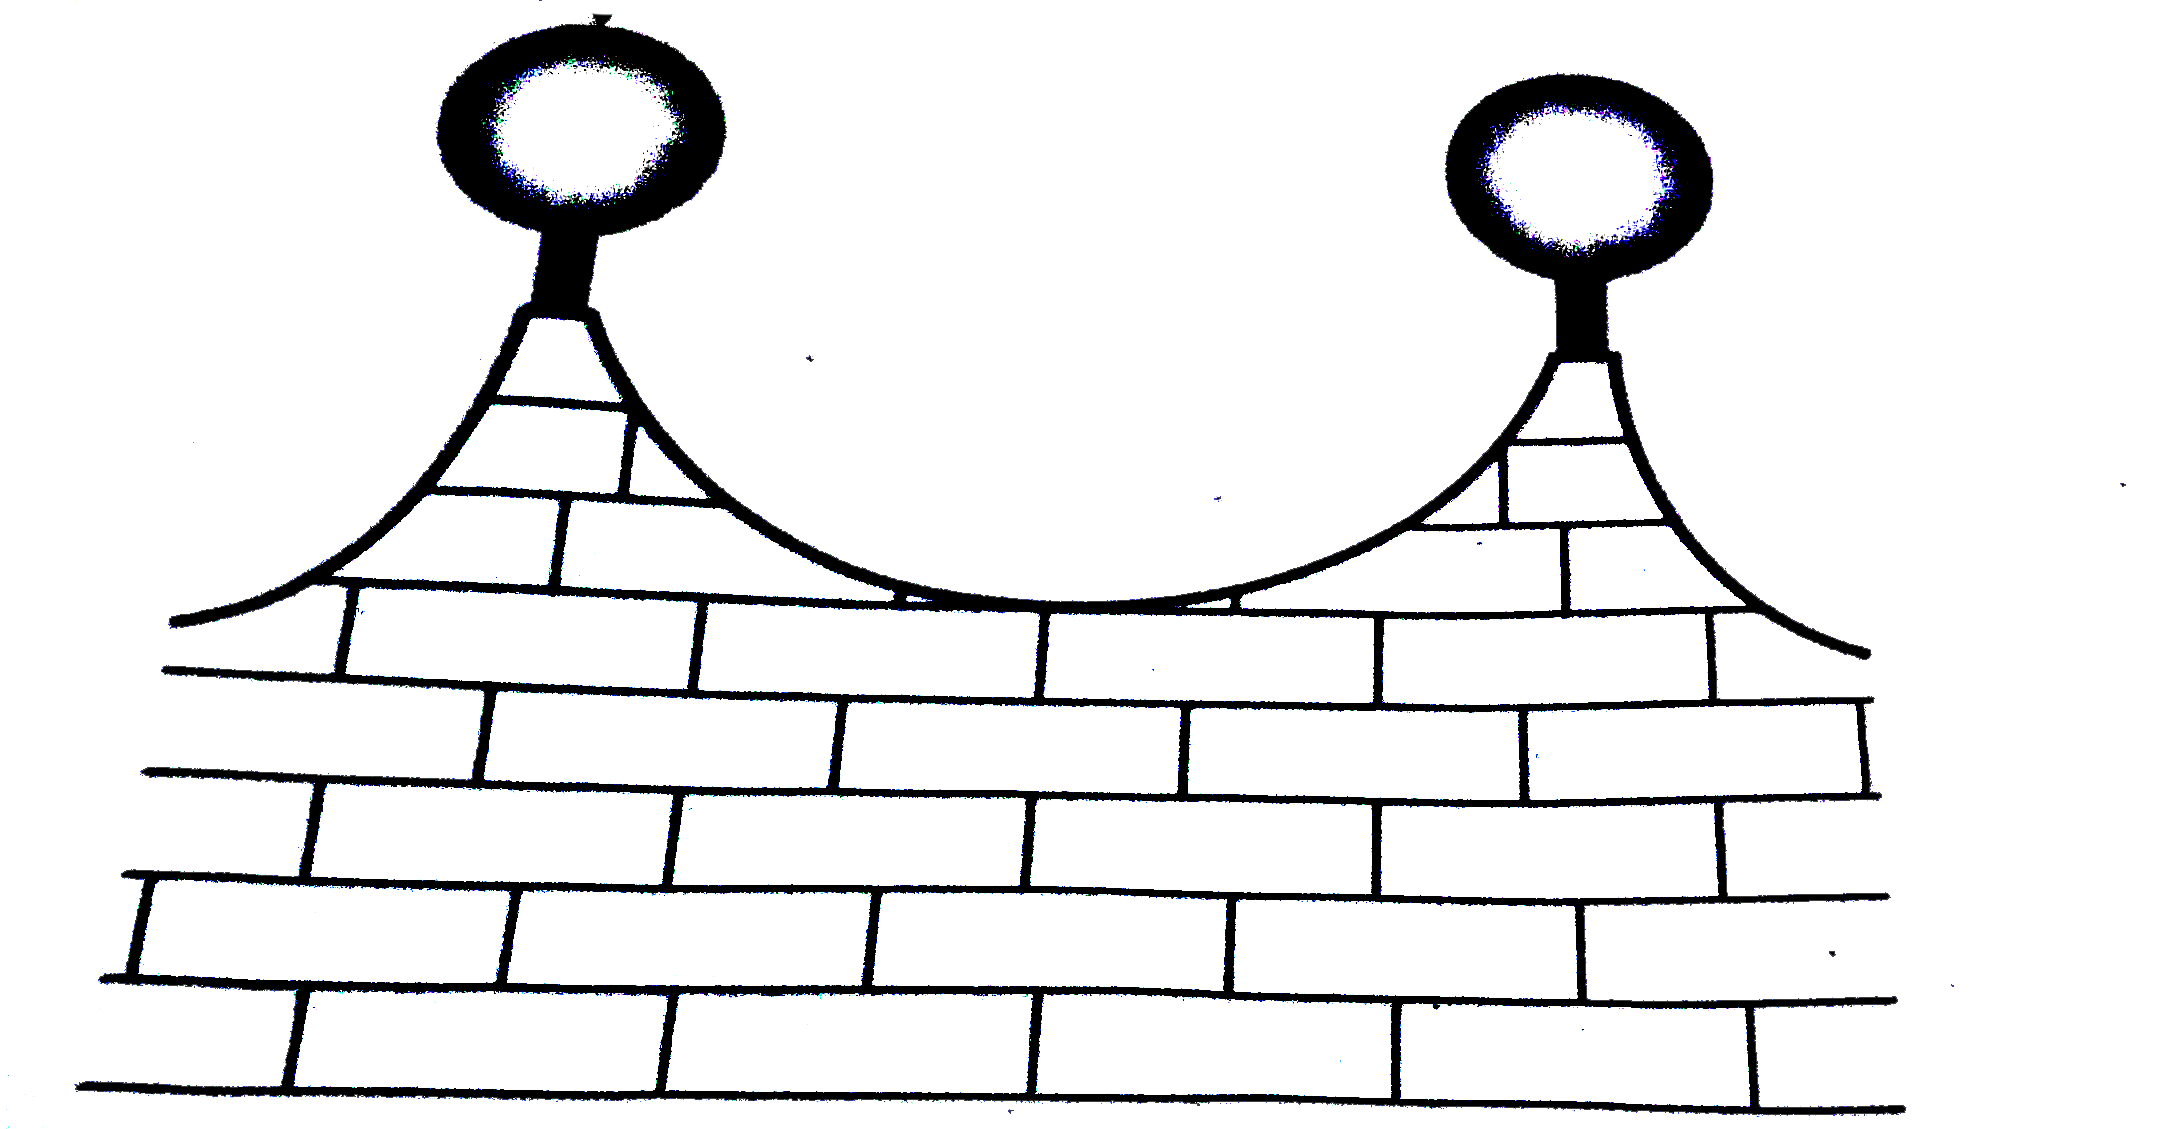 किसी घर के कम्पाउण्ड की सामने की दिवार को 21 सेमी व्यास वाले लकड़ी के गोलों को छोटे आधारों पर टिका कर सजाया जाता है, जैसा कि आकृति में दिखाया गया है। इस प्रकार के आठ गोलों का प्रयोग इस कार्य के लिए किया जाना है और इन गोलों को चाँदी वाले रंग में पेन्ट करवाना है। प्रत्येक आधार 1.5 सेमी त्रिज्या और ऊँचाई 7 सेमी का एक बेलन है तथा इन्हें काले रंग से पेन्ट करवाना है। यदि चाँदी के रंग का पेन्ट करवाने की दर 25 पैसे प्रति